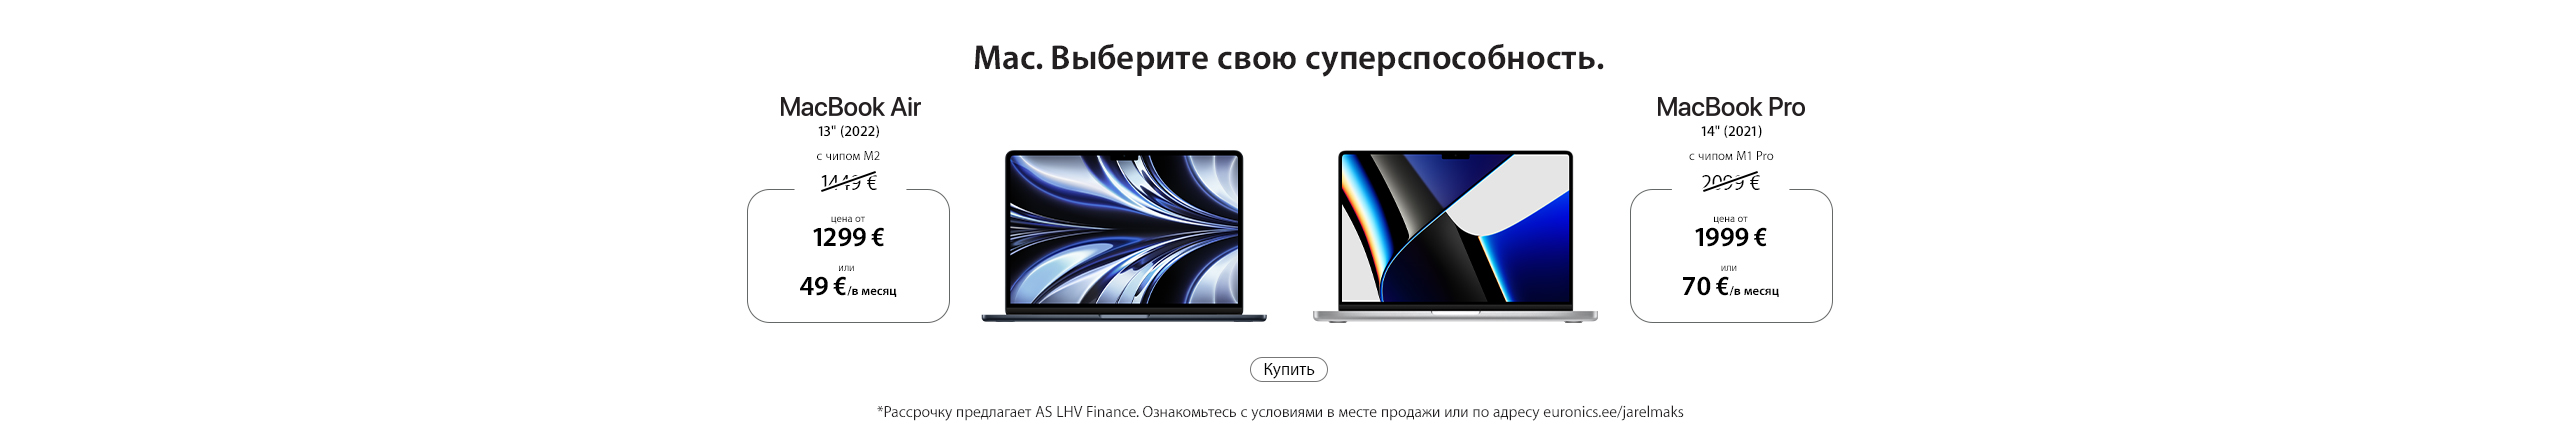 Cпециальное предложения Apple. MacBook Air и iMac